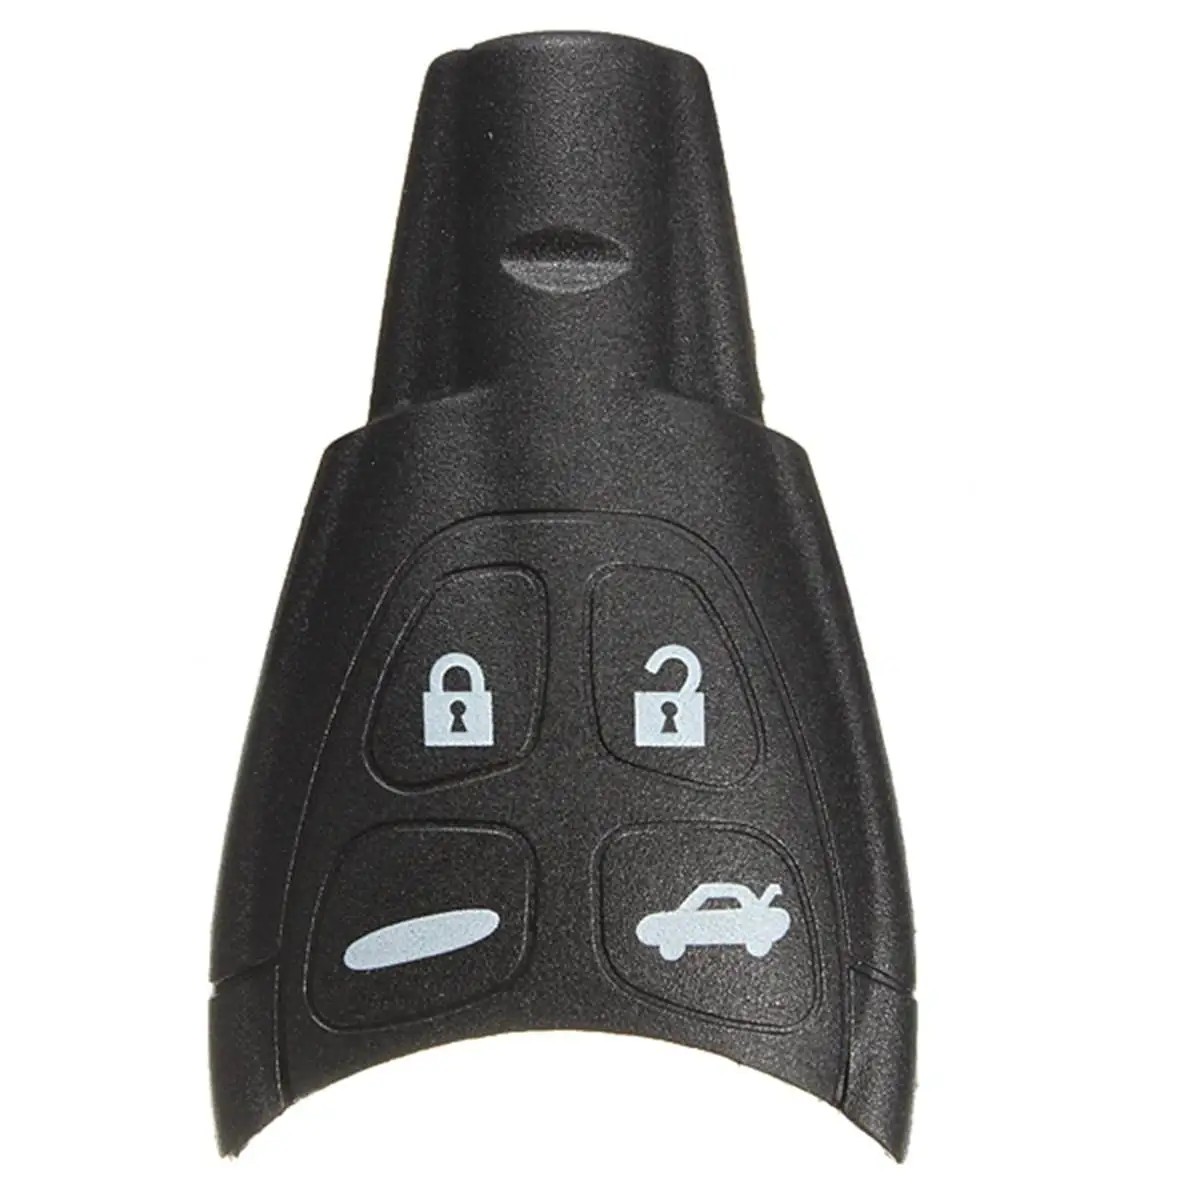 4 кнопки автомобиля дистанционного управления ключ карта для зарядки без ключа чехол полный ремонтный комплект для SAAB 93 95 Tid